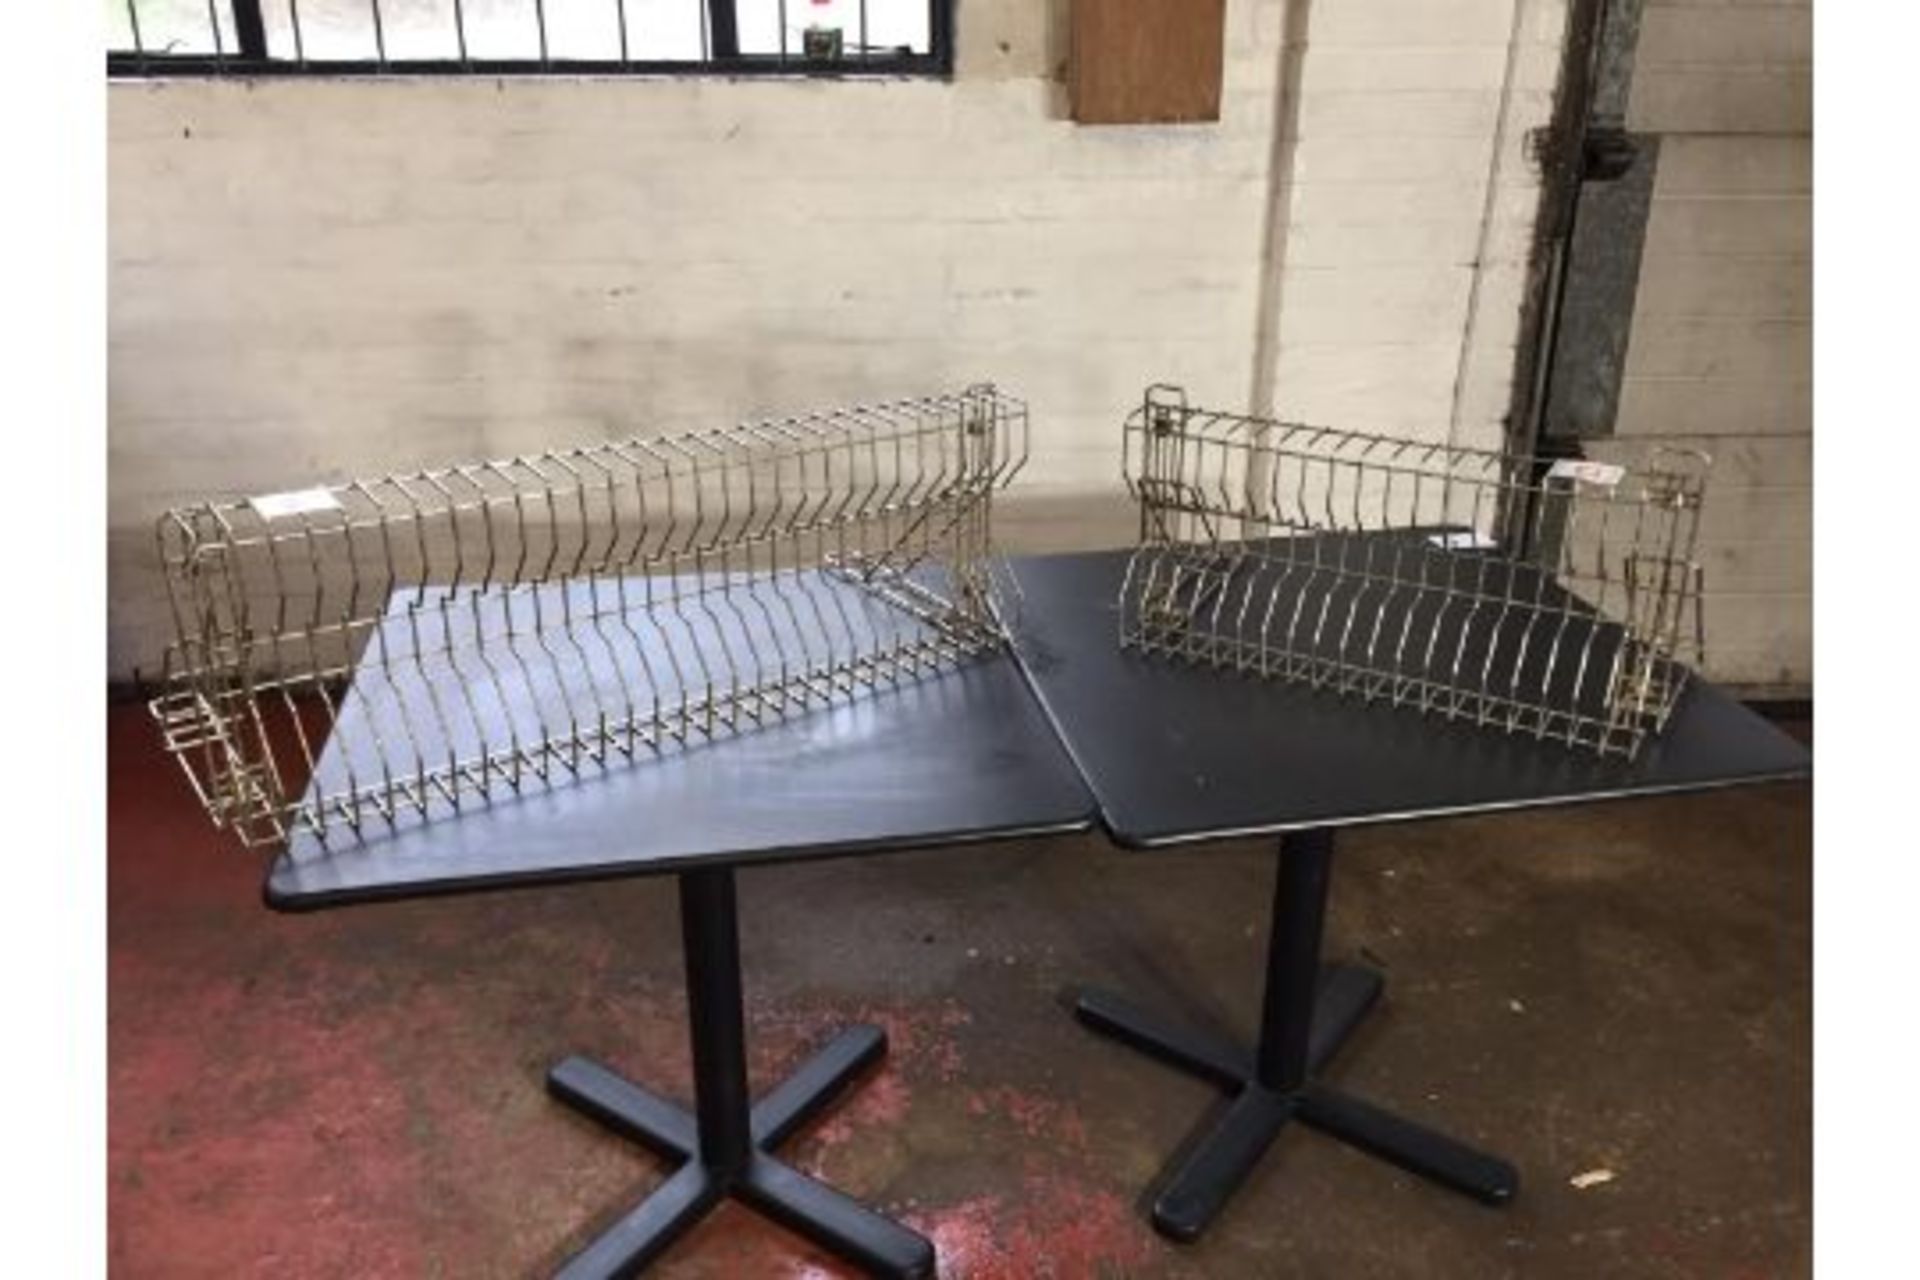 Stainless steel plate racks